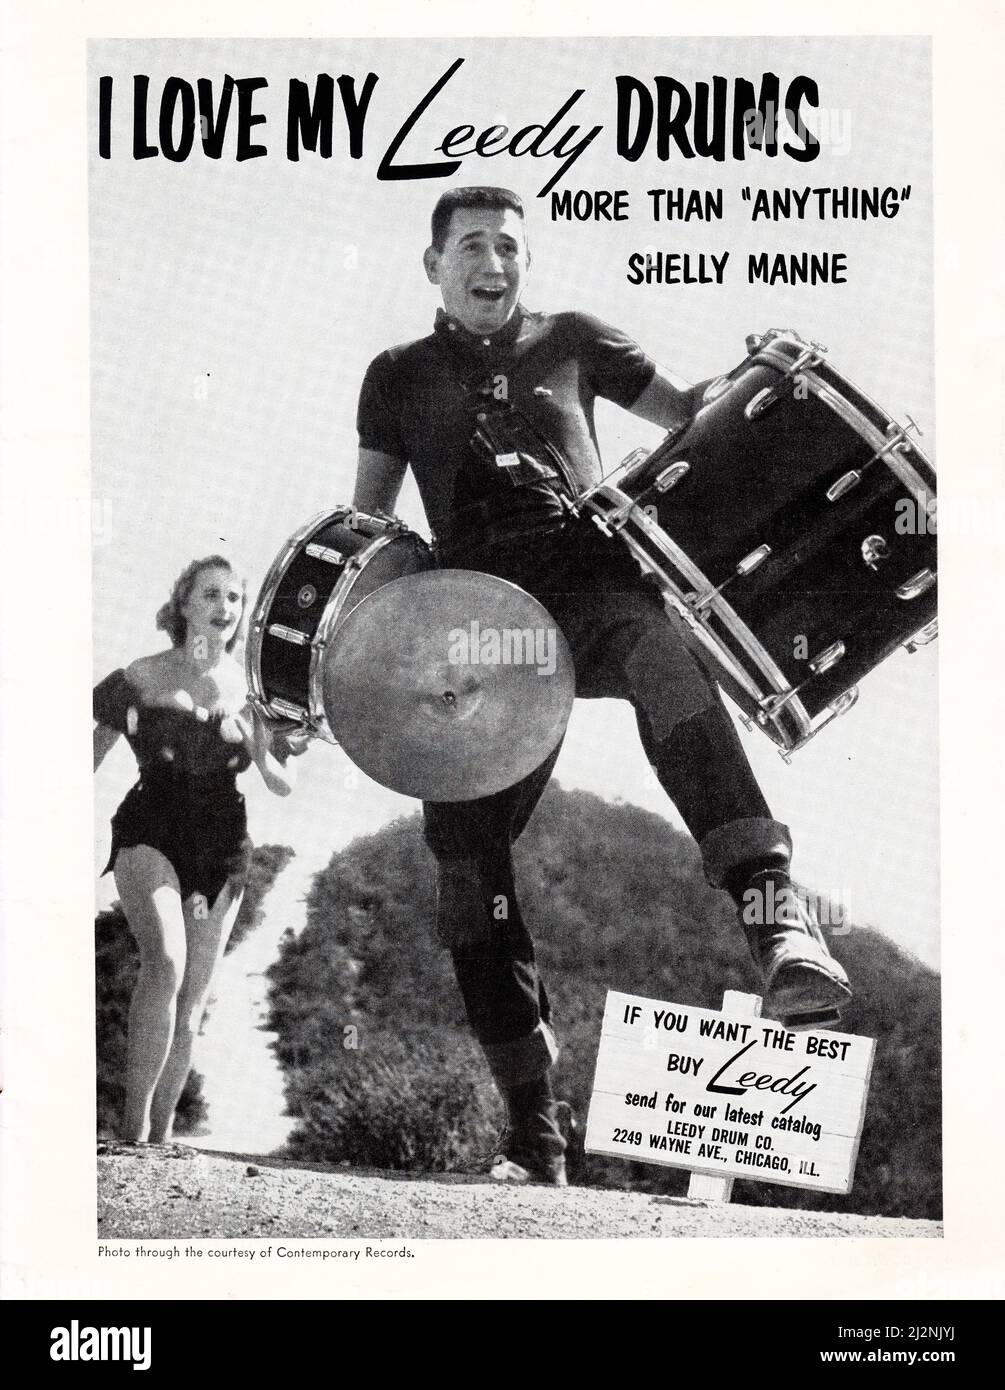 Annuncio a pagina intera per Leedy Drums da una rivista di musica americana del 1960 con il batterista jazz Shelly Manne. Foto Stock